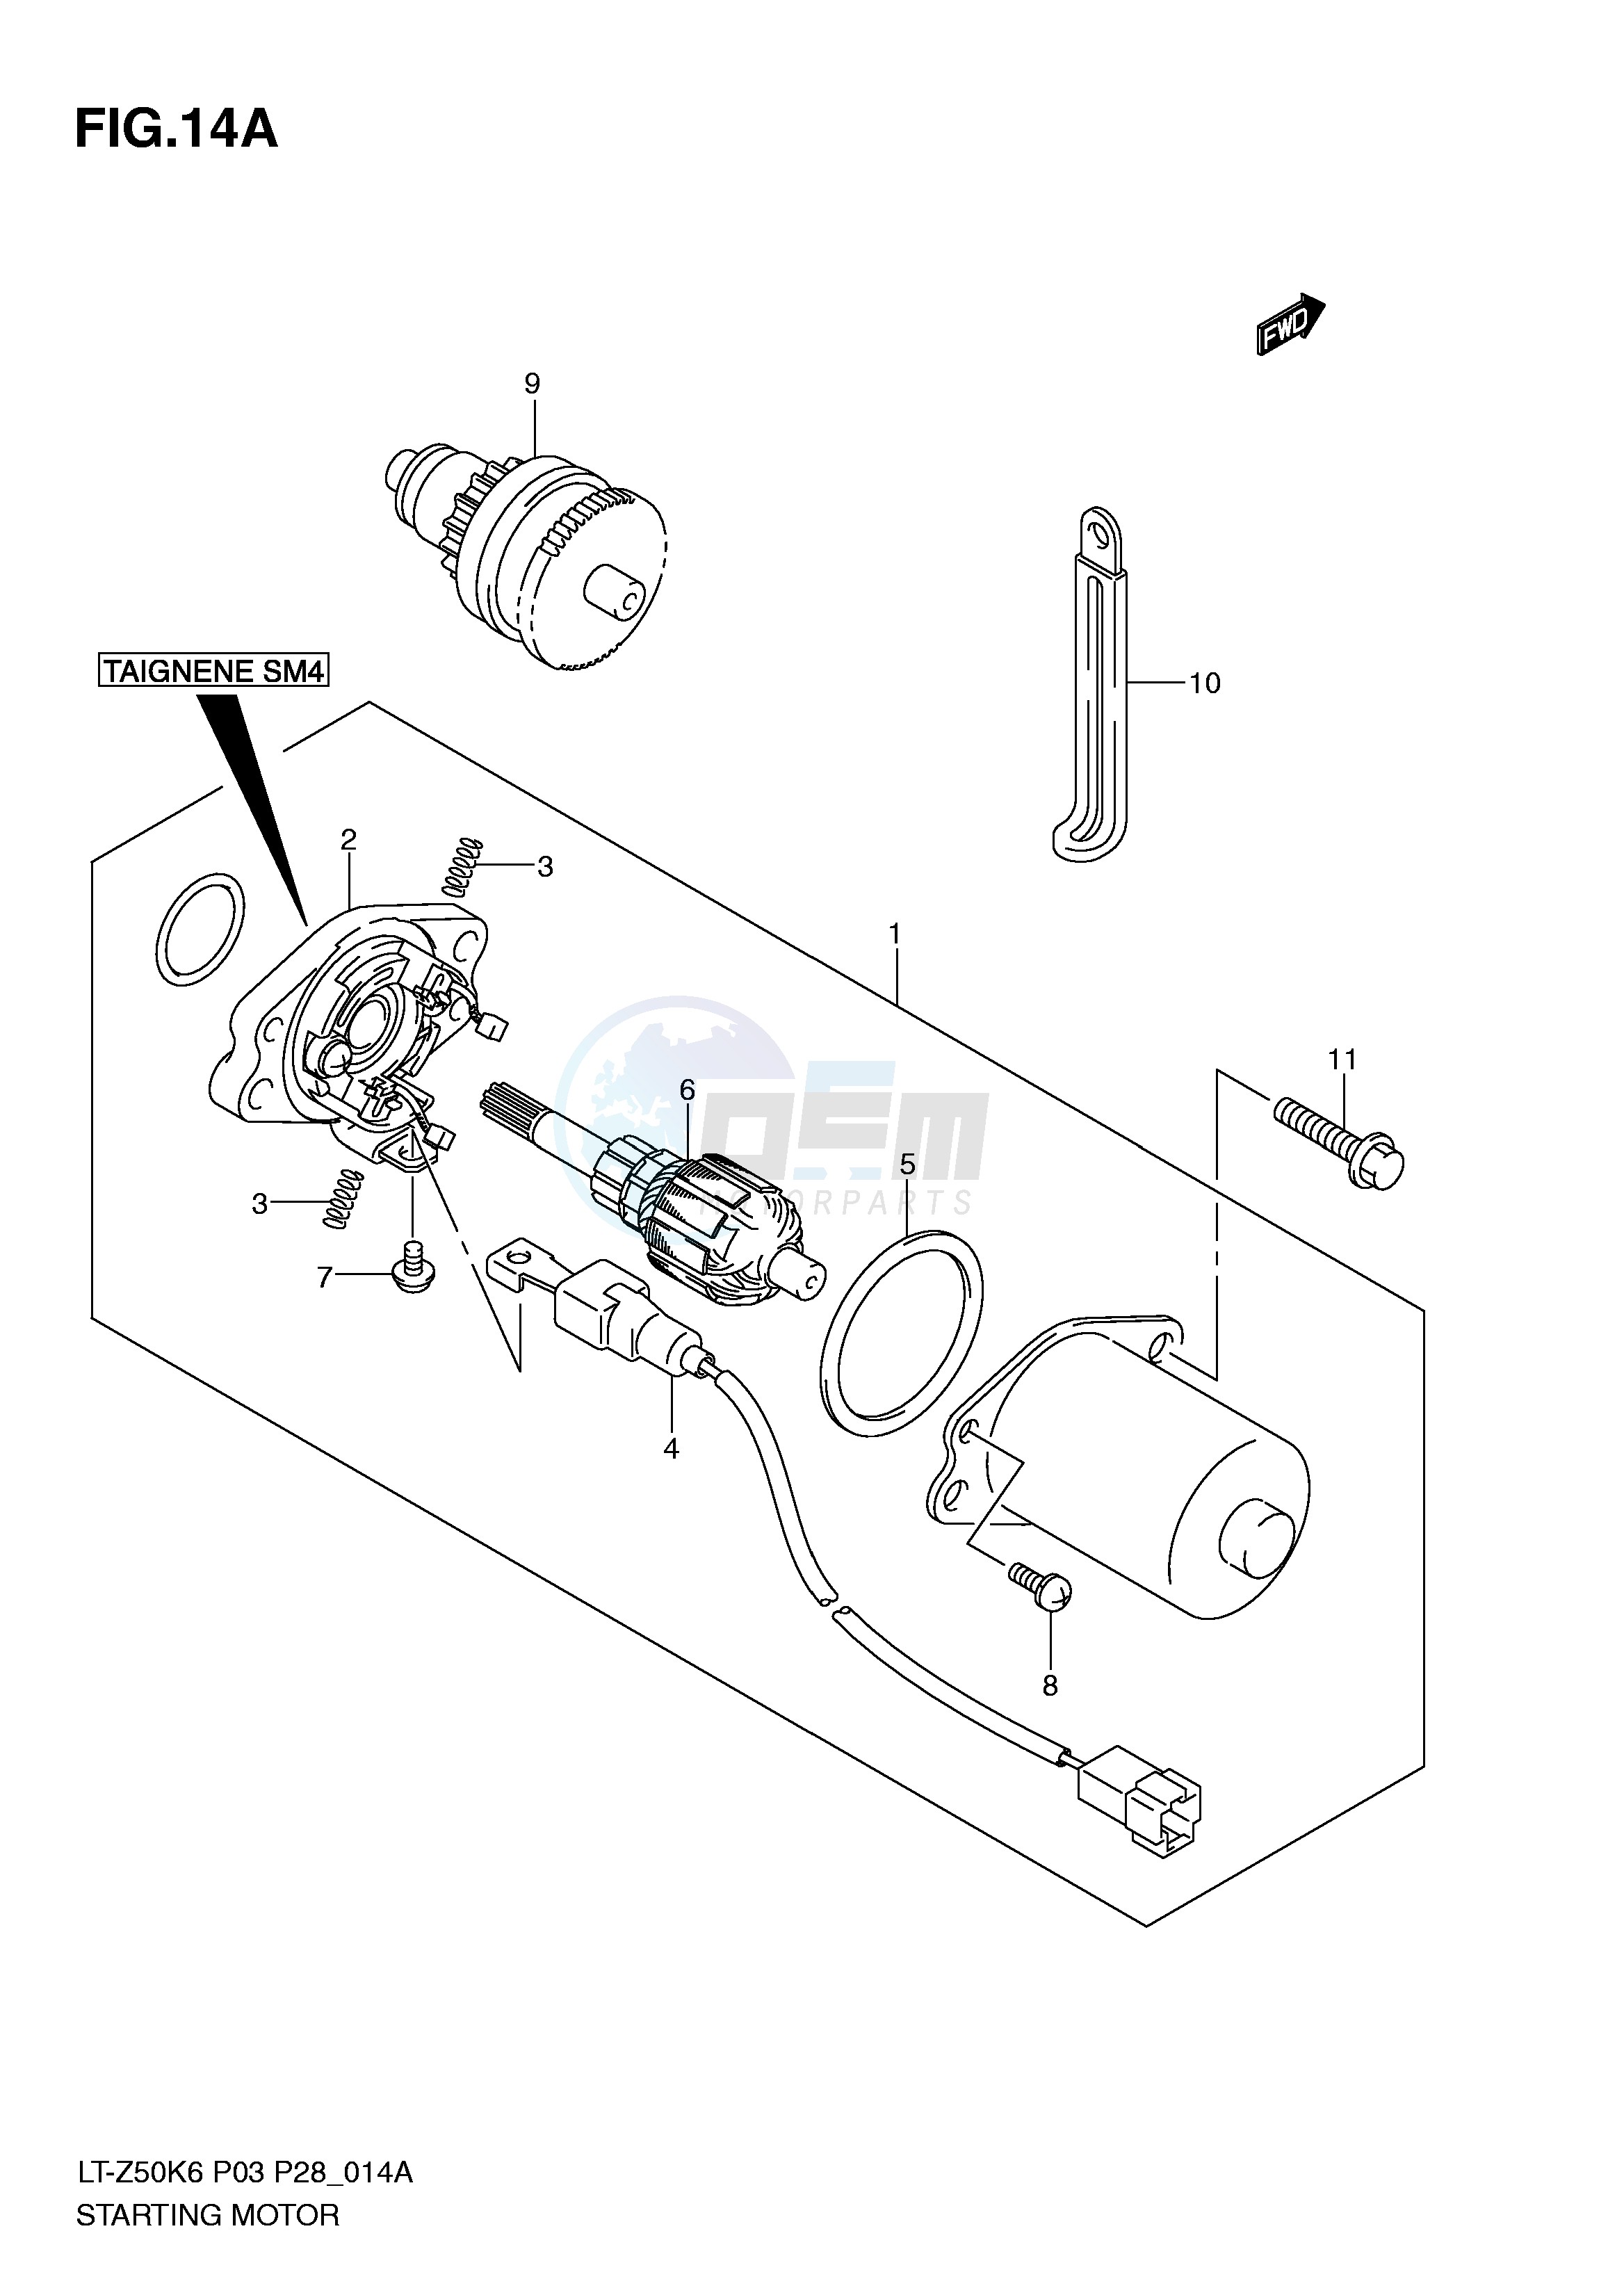 STARTING MOTOR (MODEL K8 K9 L0) blueprint